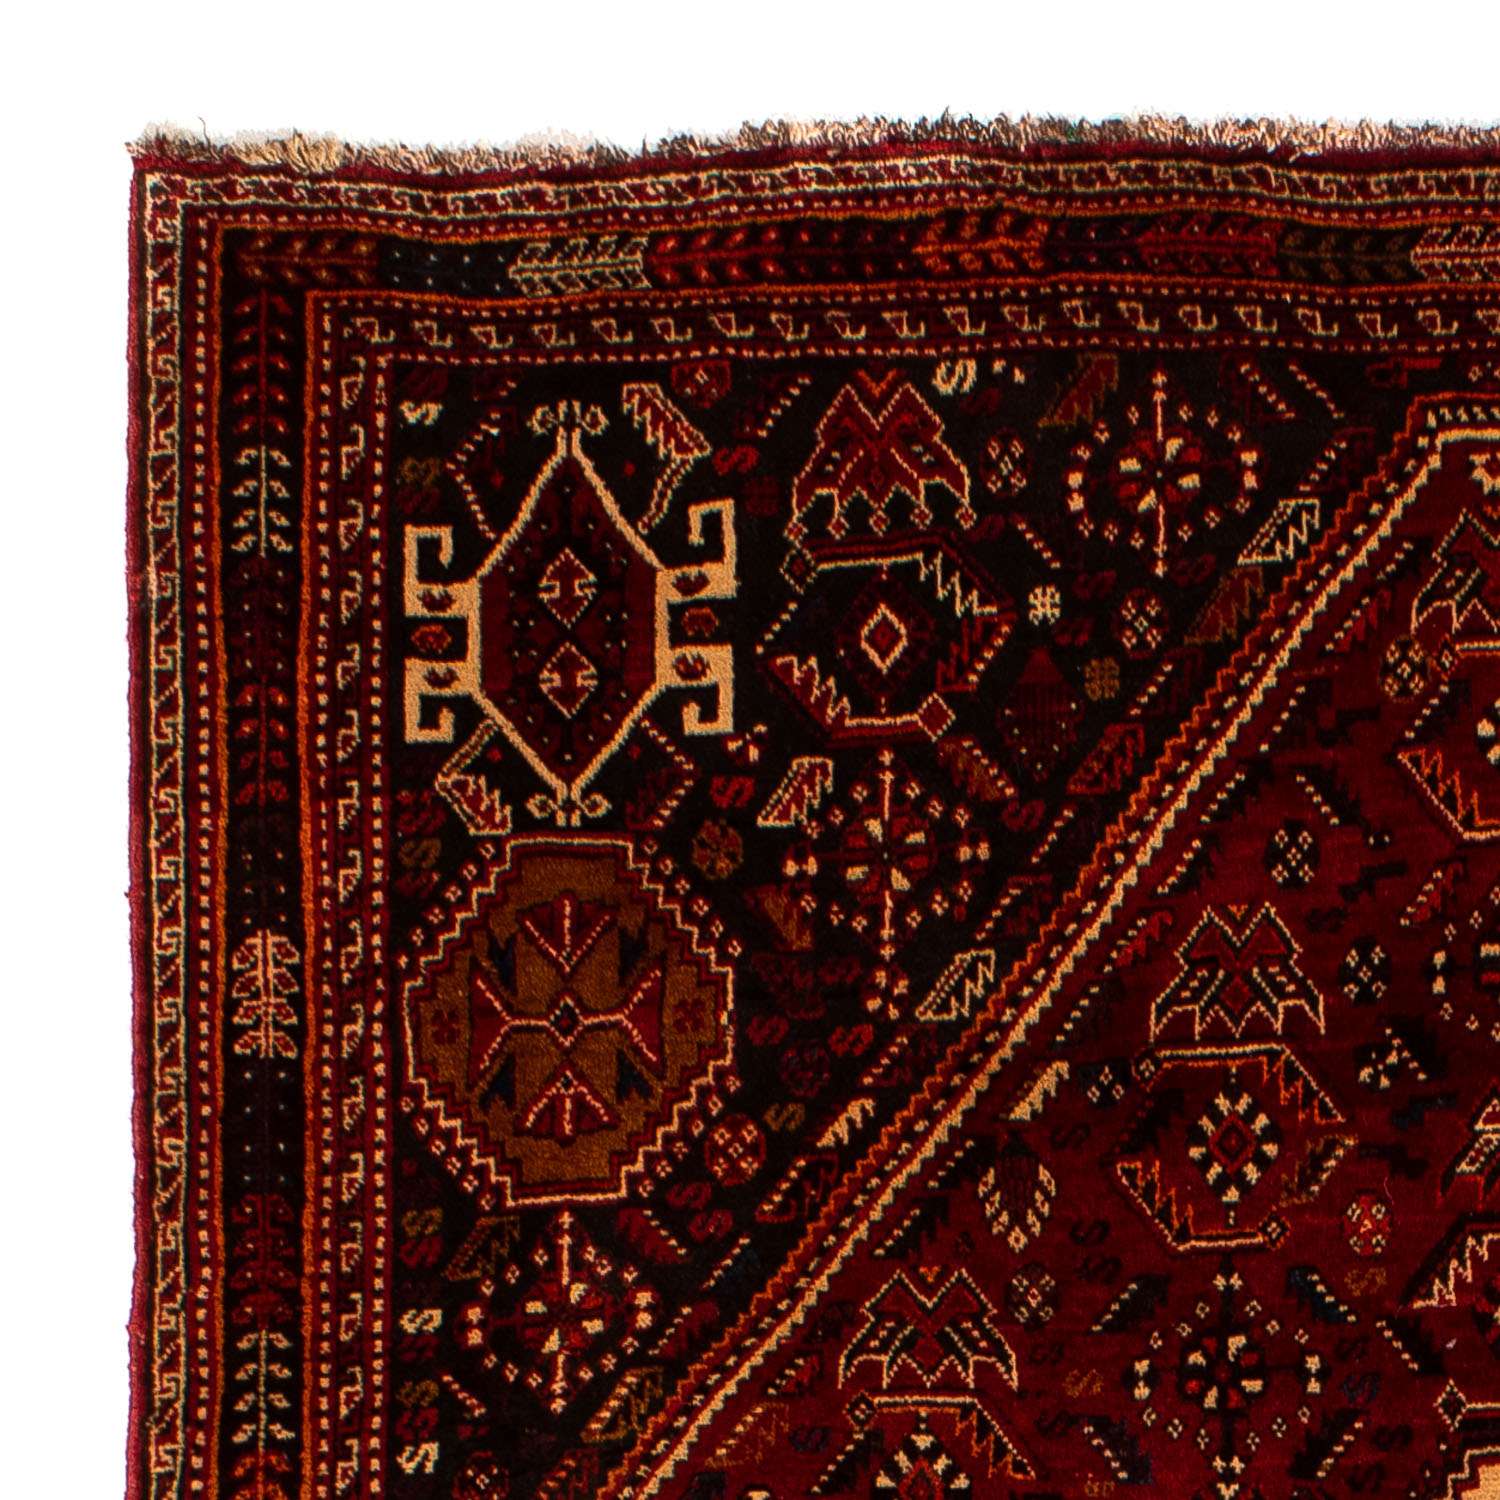 Tapis persan - Nomadic - 275 x 182 cm - rouge foncé